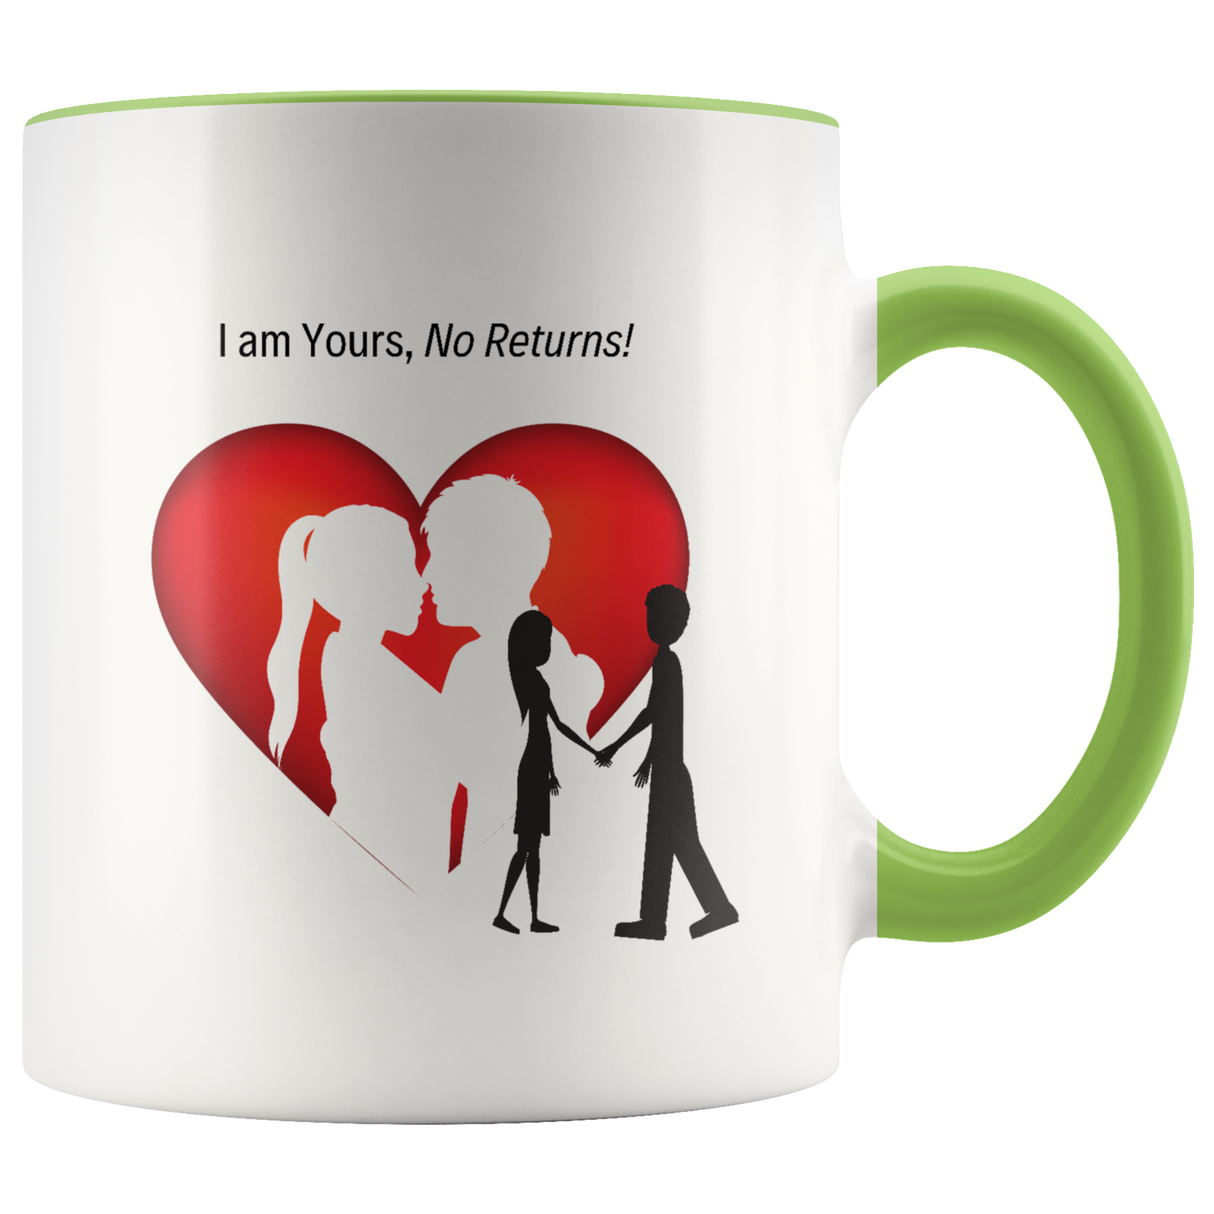 I'm Your Mug Ceramic Accent Mug - Green | Shop Sassy Chick